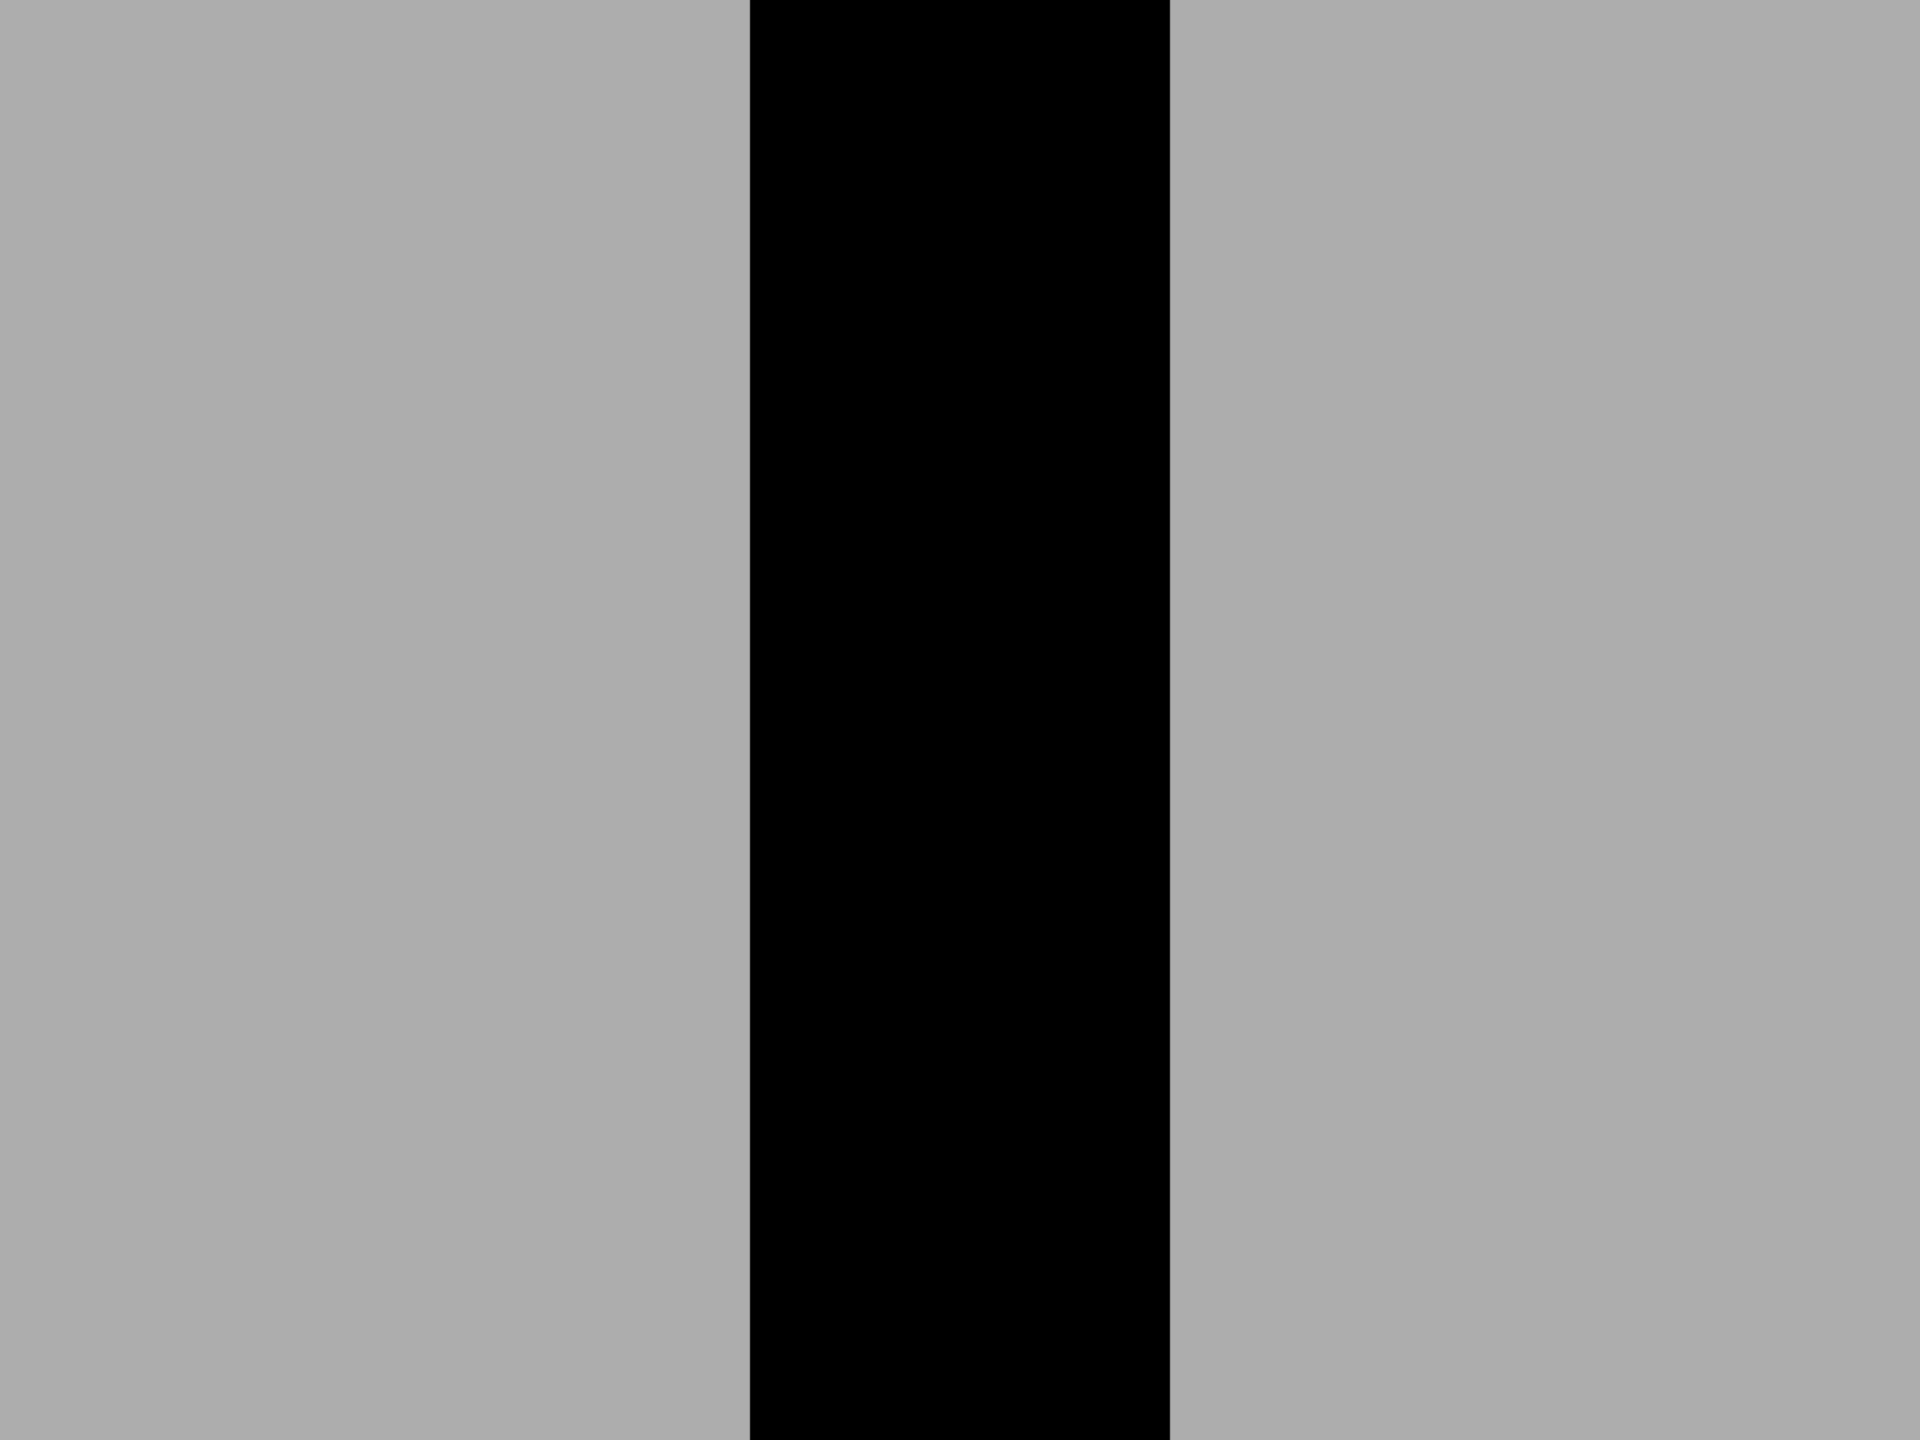 Cornsweetova iluze se naplno vyjevuje po zakrytí střední části.